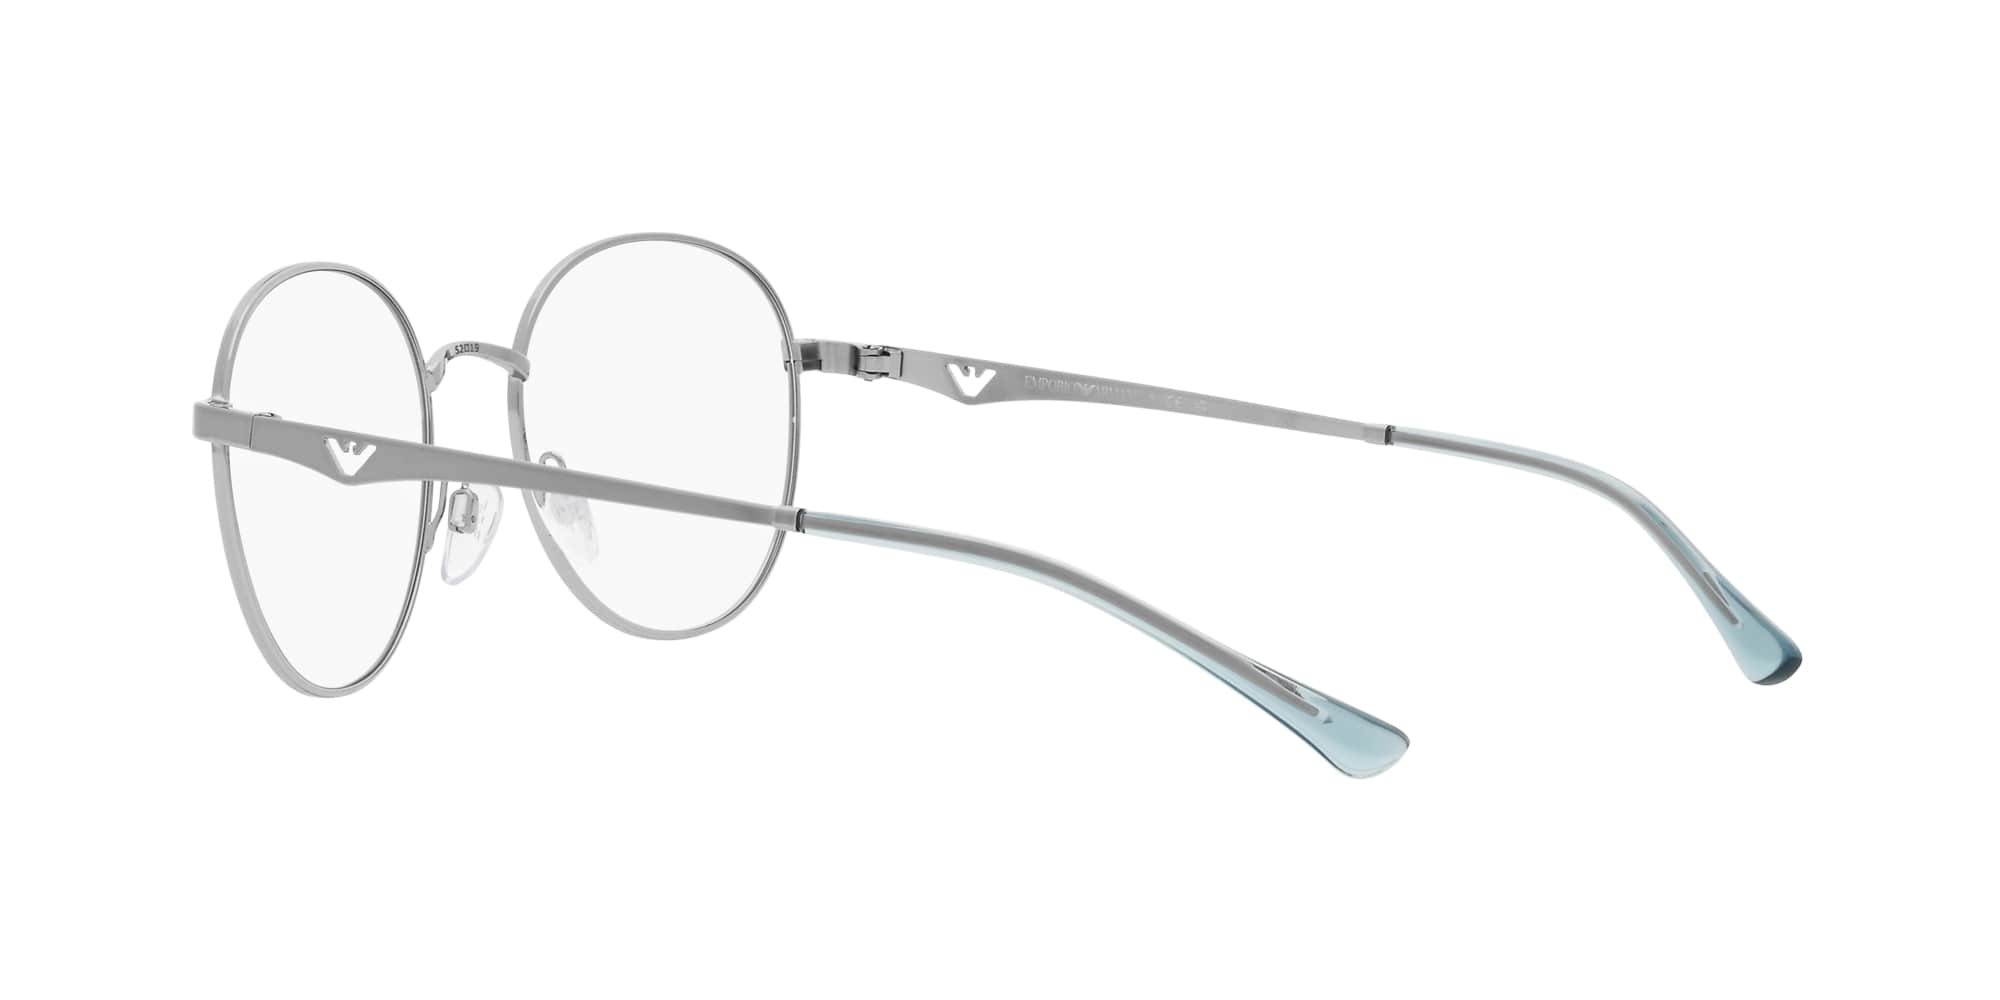 Das Bild zeigt die Korrektionsbrille EA1144 3015 von der Marke Emporio Armani in Silber.